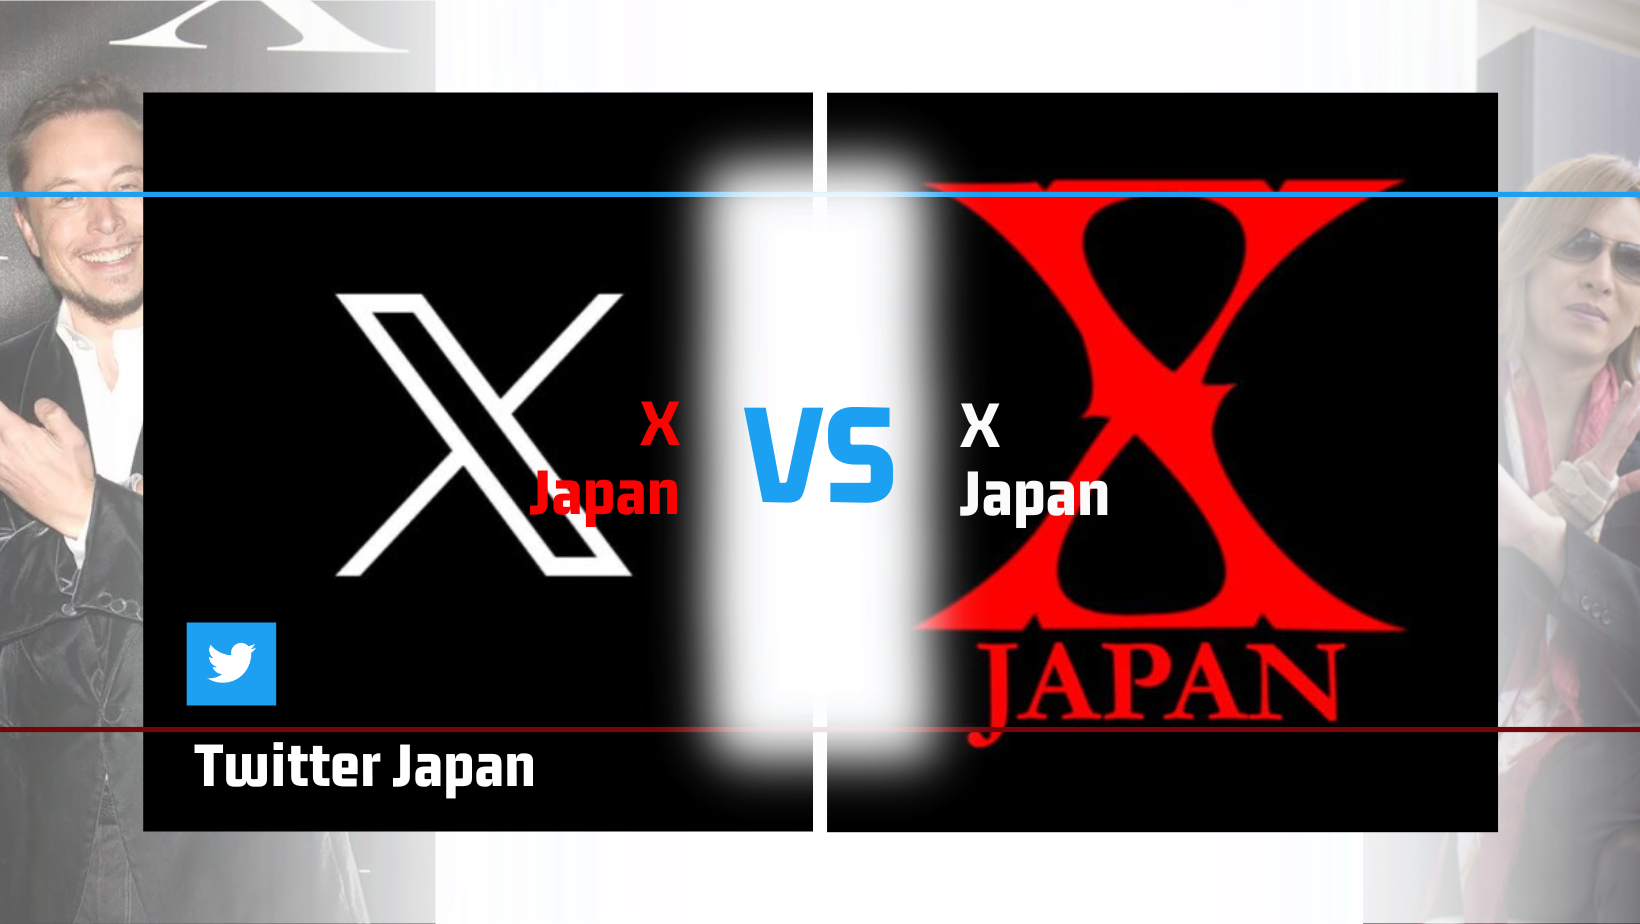 Twitter X vs X Japan